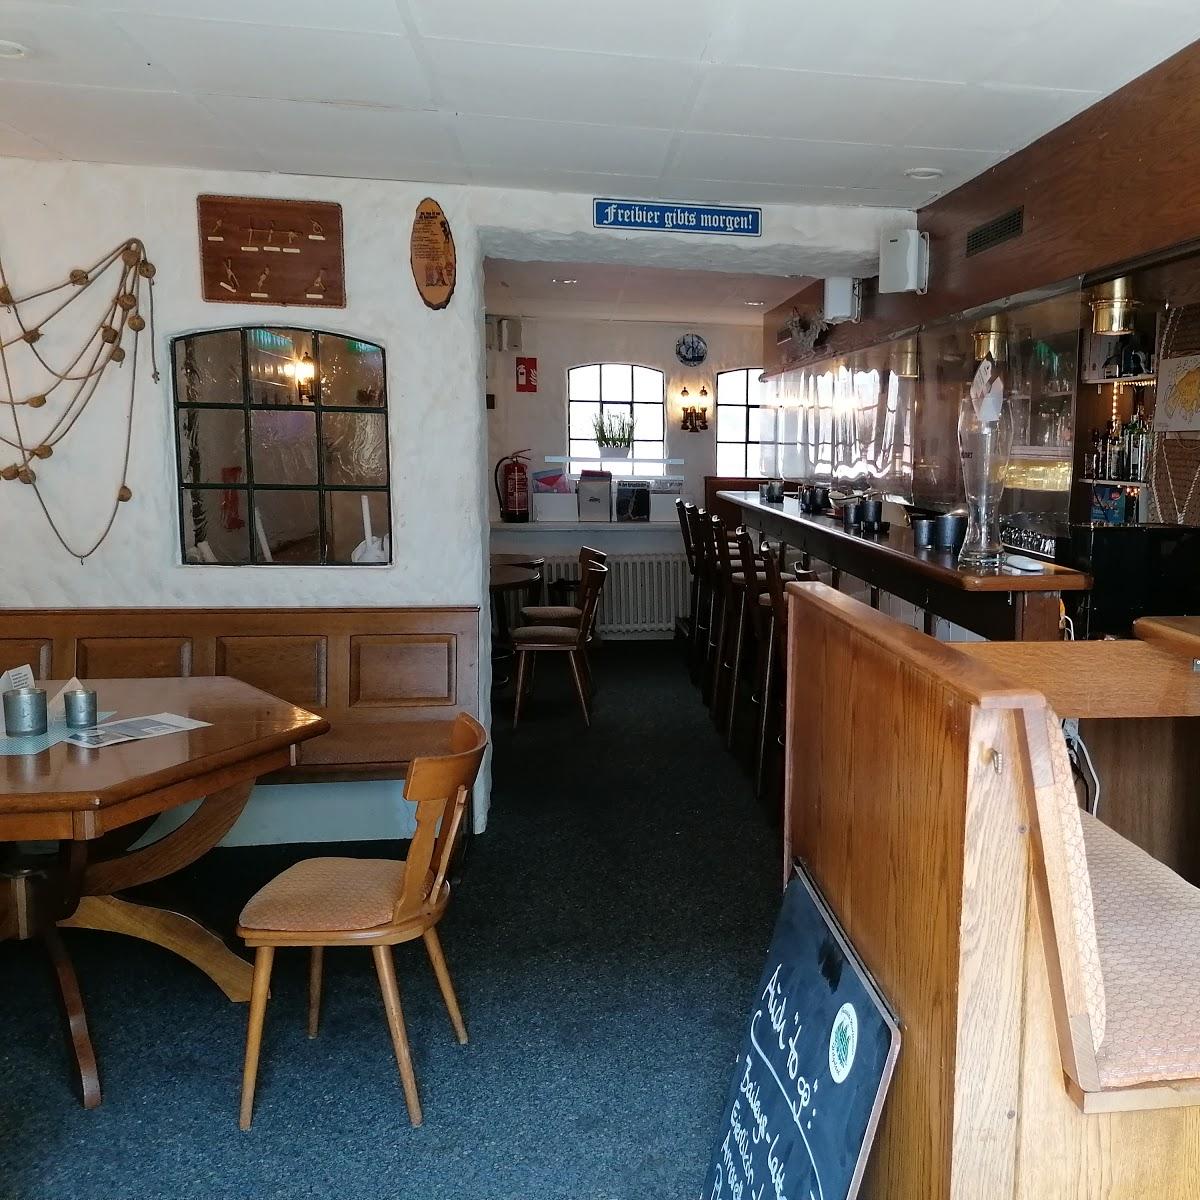 Restaurant "Windjammer" in Helgoland